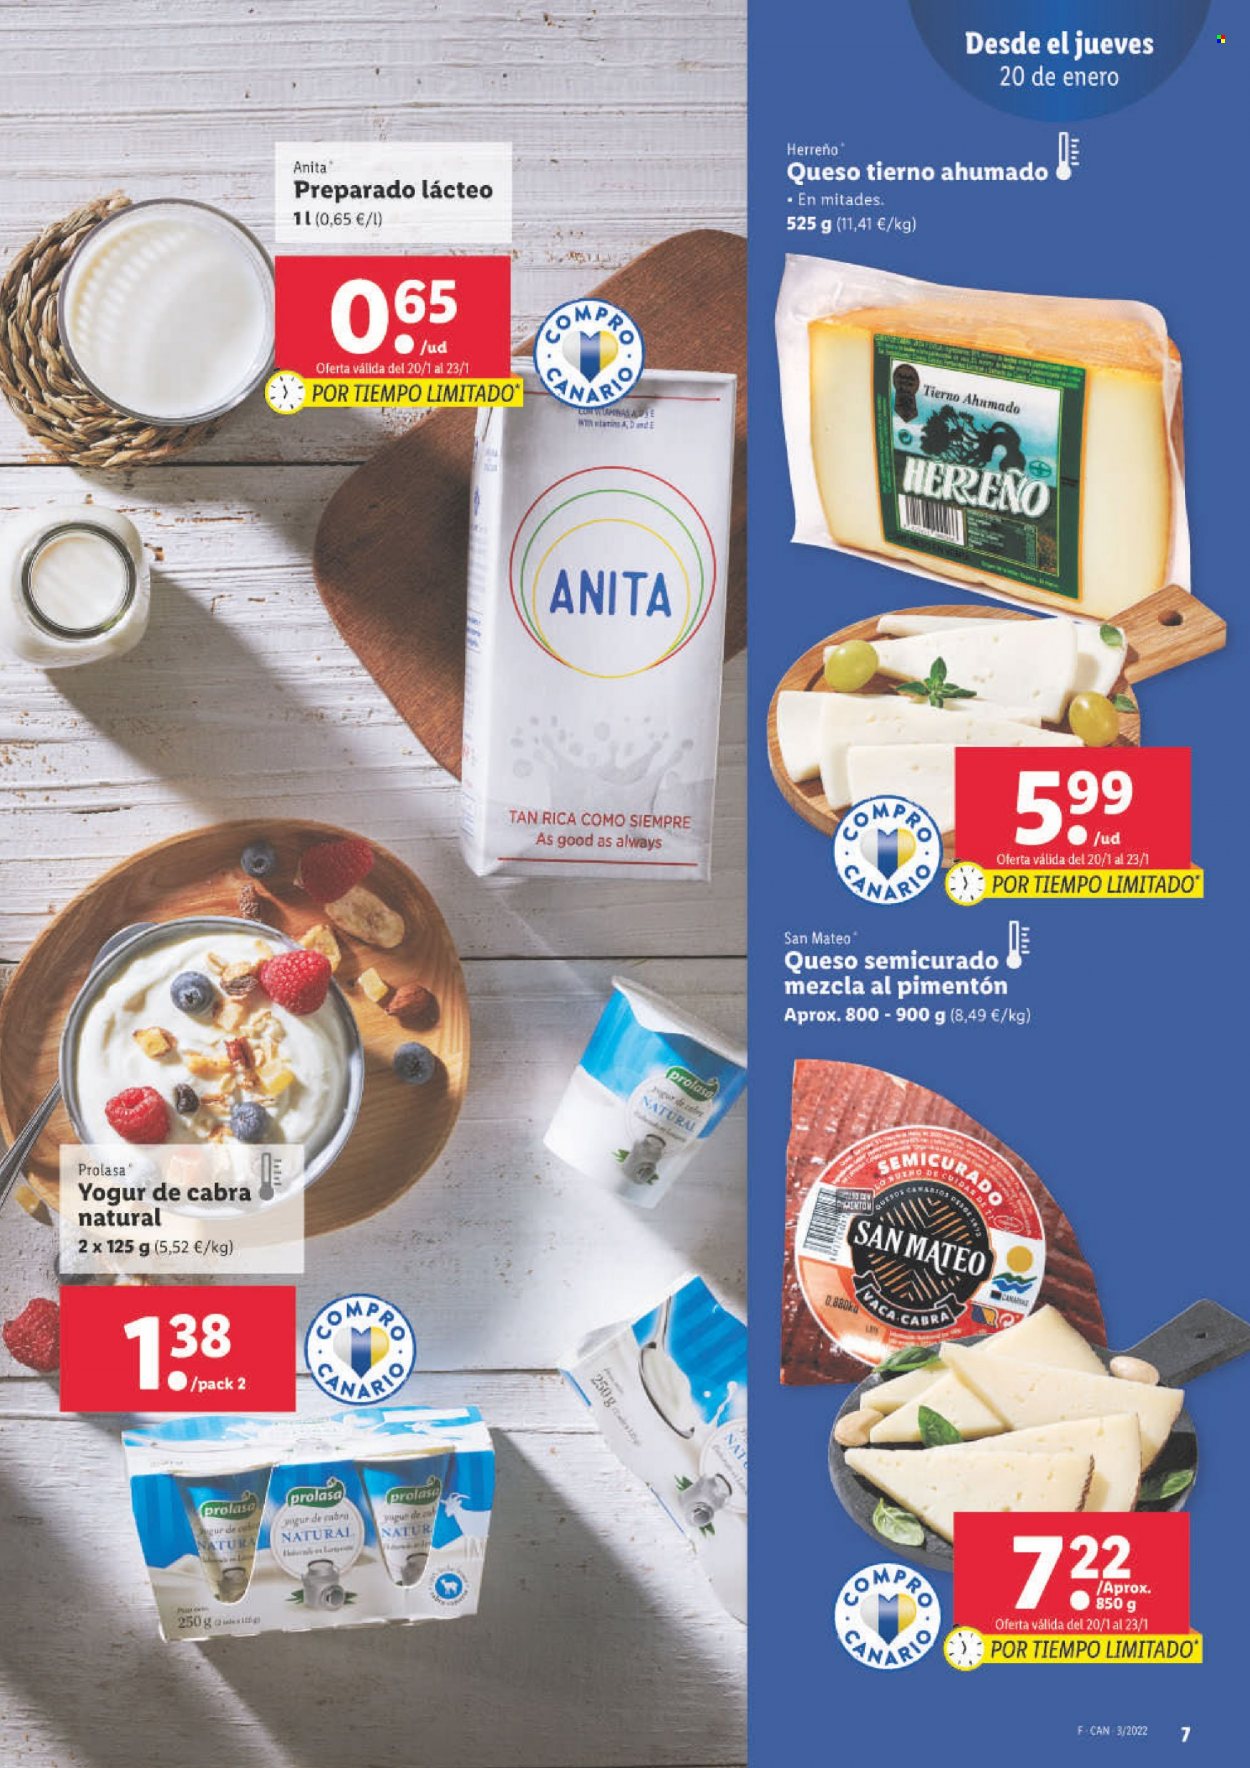 thumbnail - Folleto actual Lidl - 20/01/22 - 26/01/22 - Ventas - queso, queso semicurado, yogur, Always. Página 9.